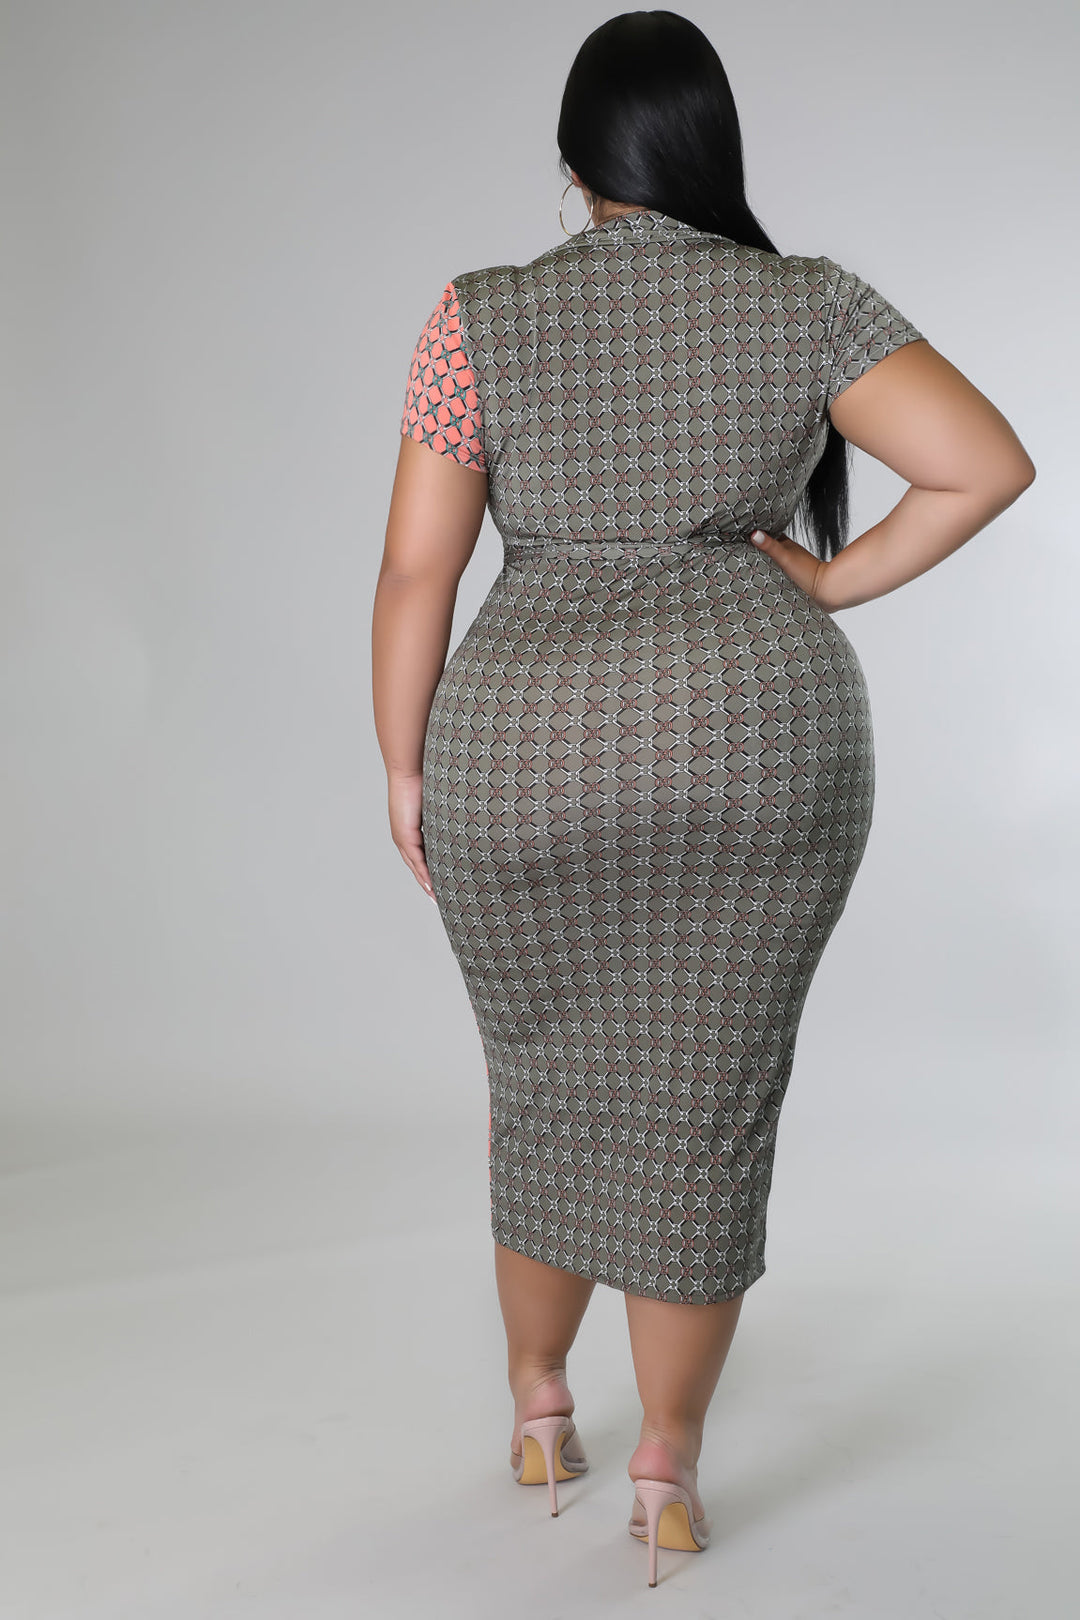 Plus Size Brunch Date Dress | NEW ARRIVALS, PLUS SIZE DRESSES | Style Your Curves